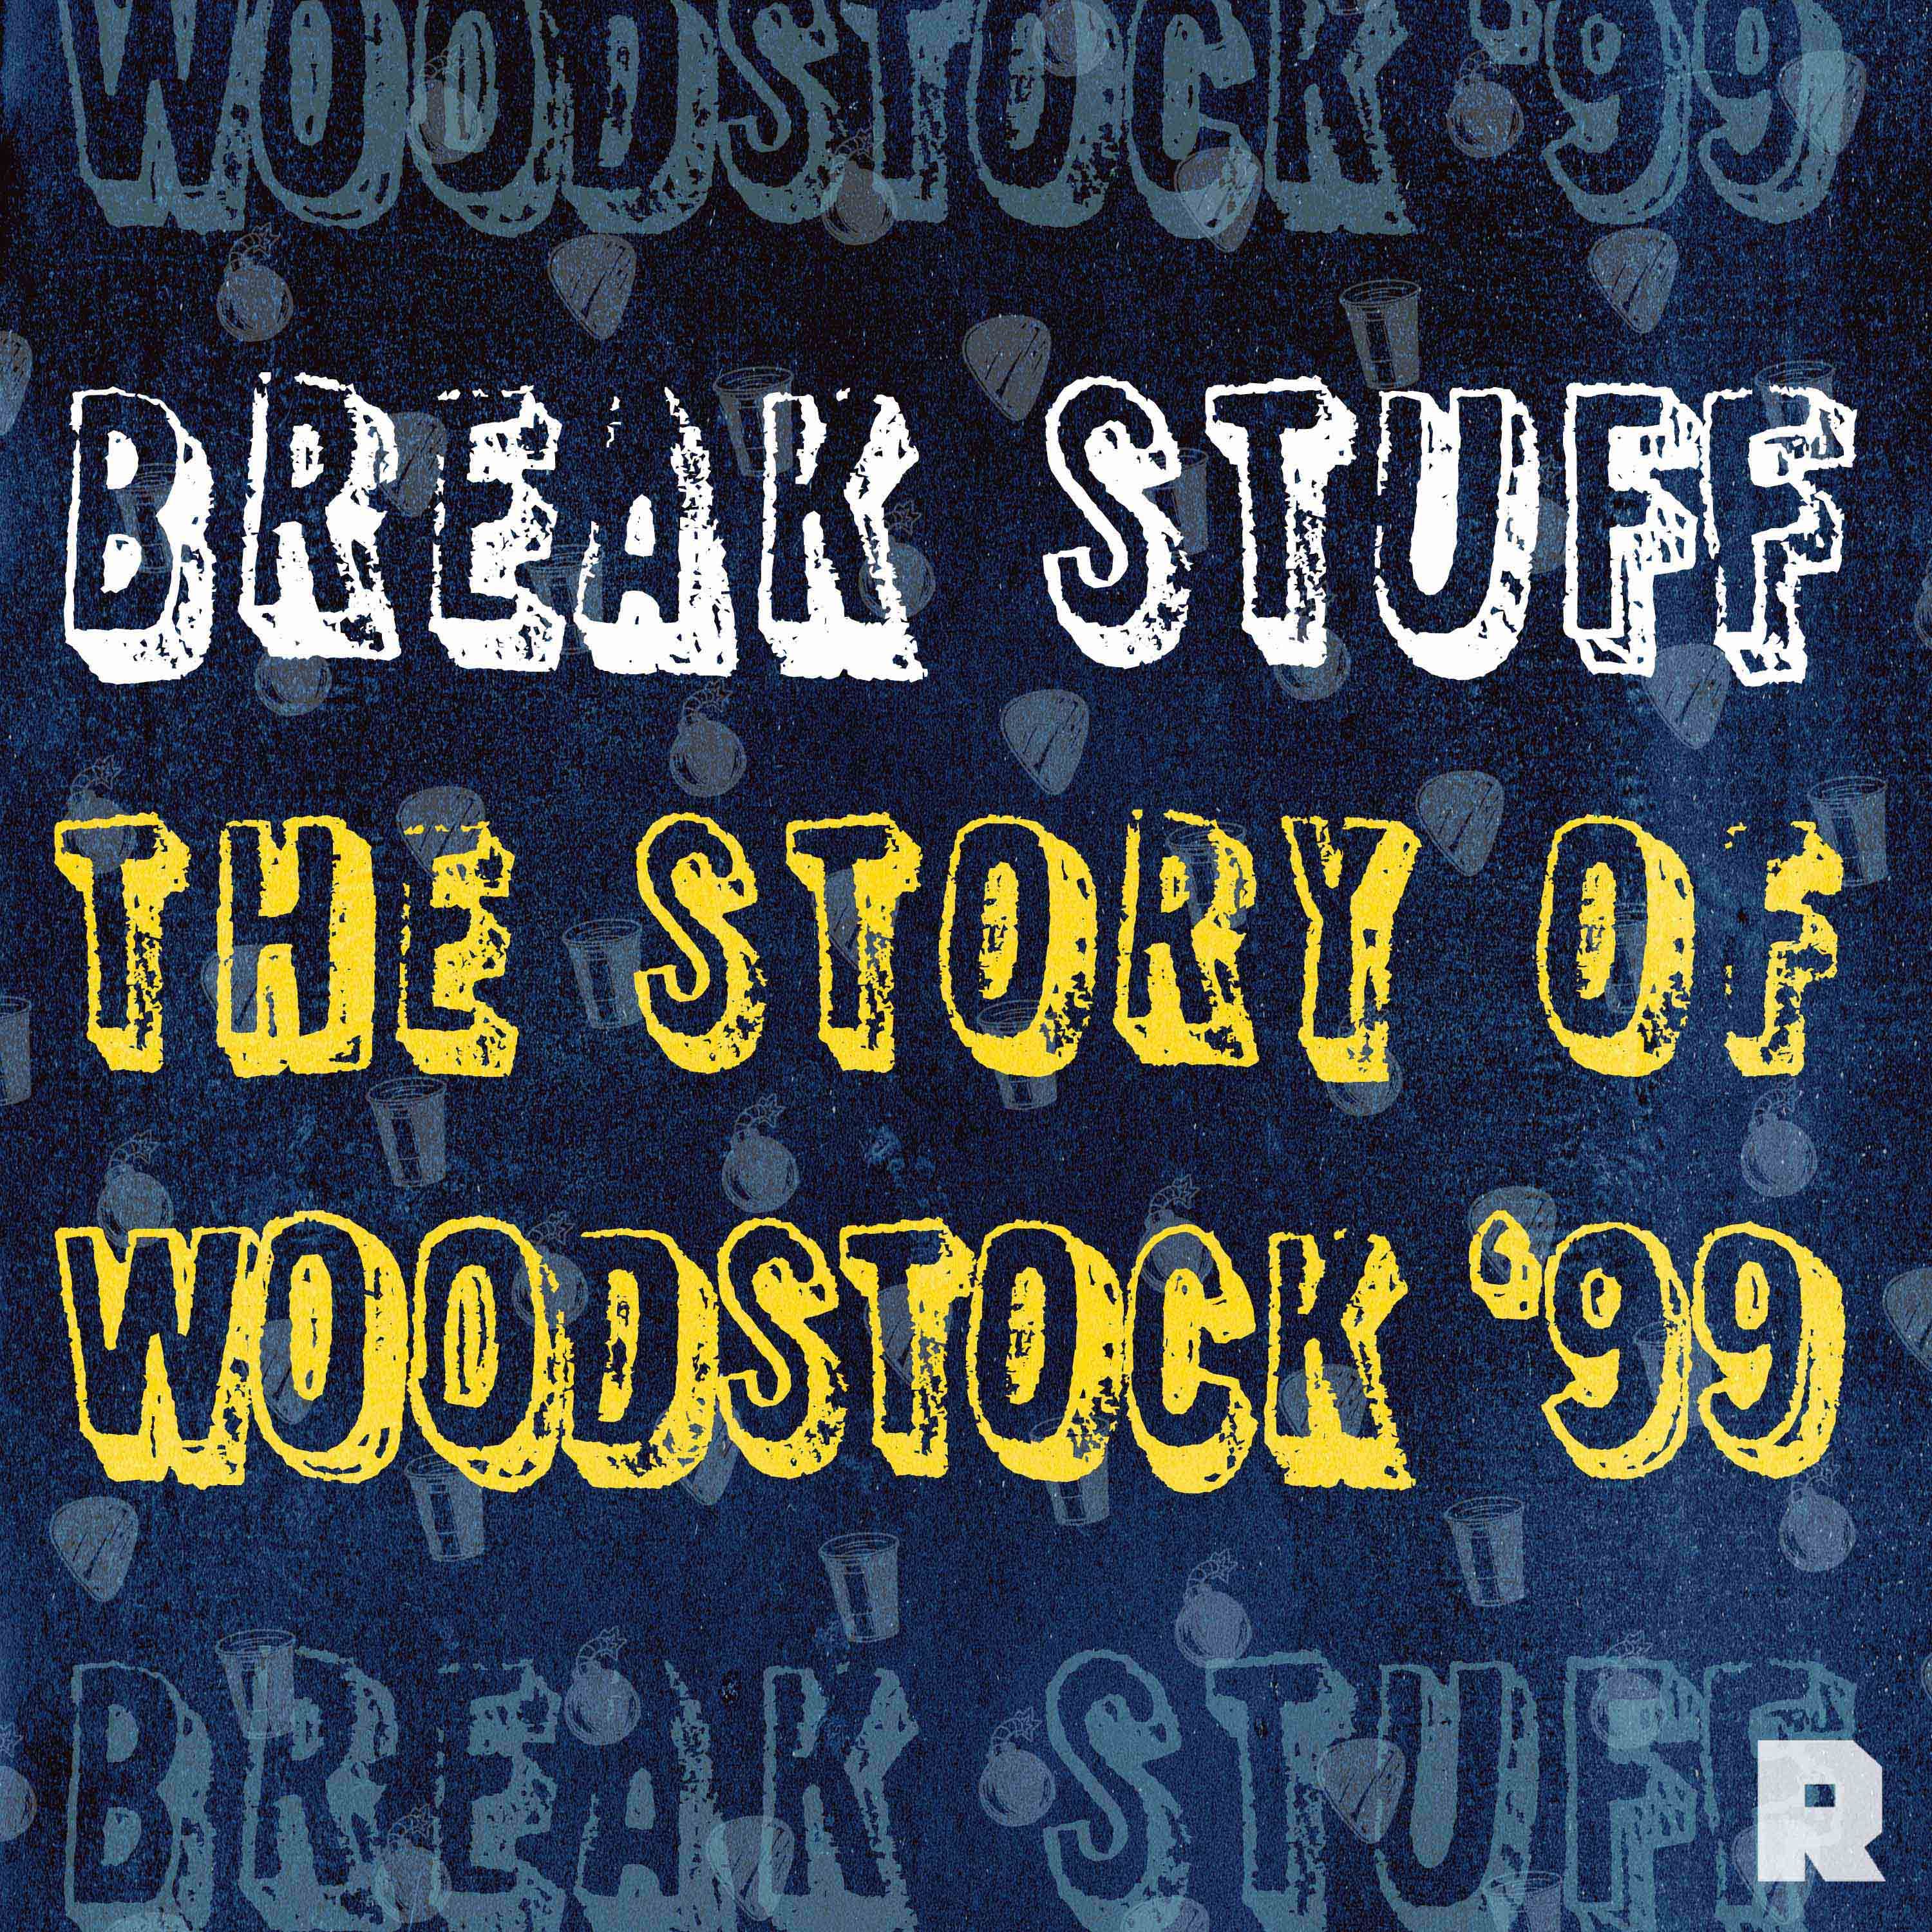 Break Stuff: The Story of Woodstock '99 key art